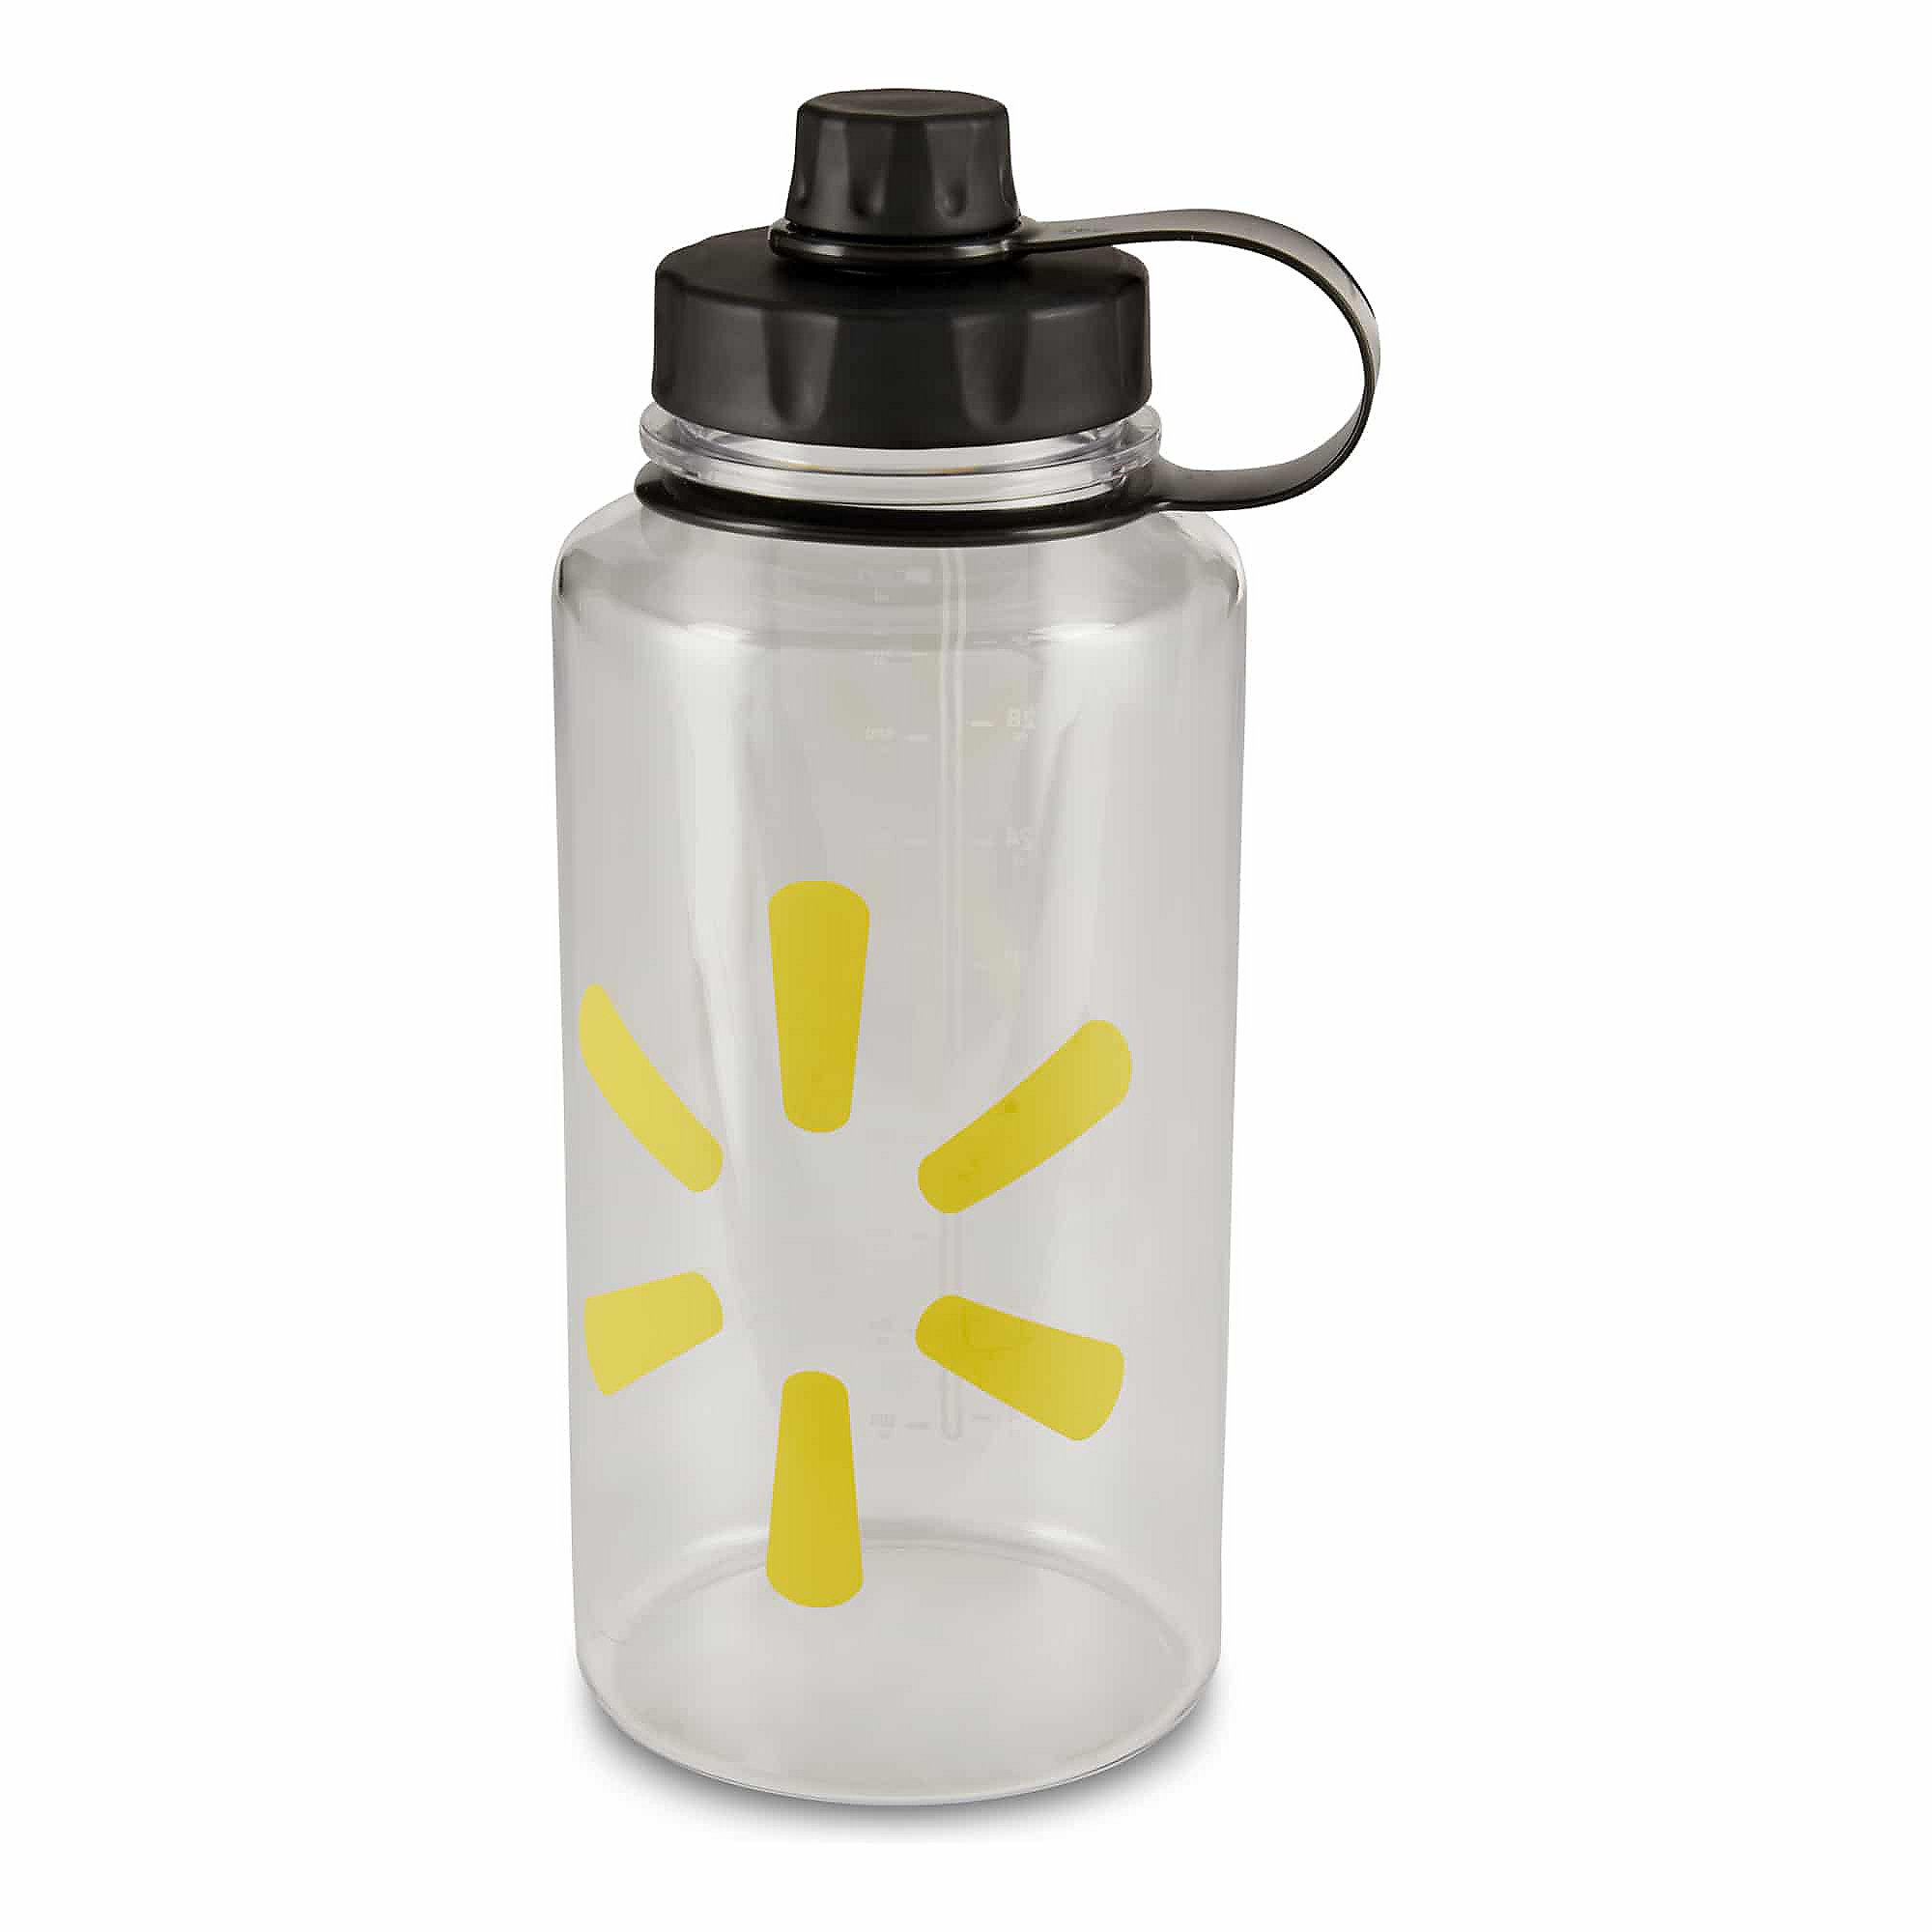 SparkShop Spark Water Bottle, 32 oz \- Clear